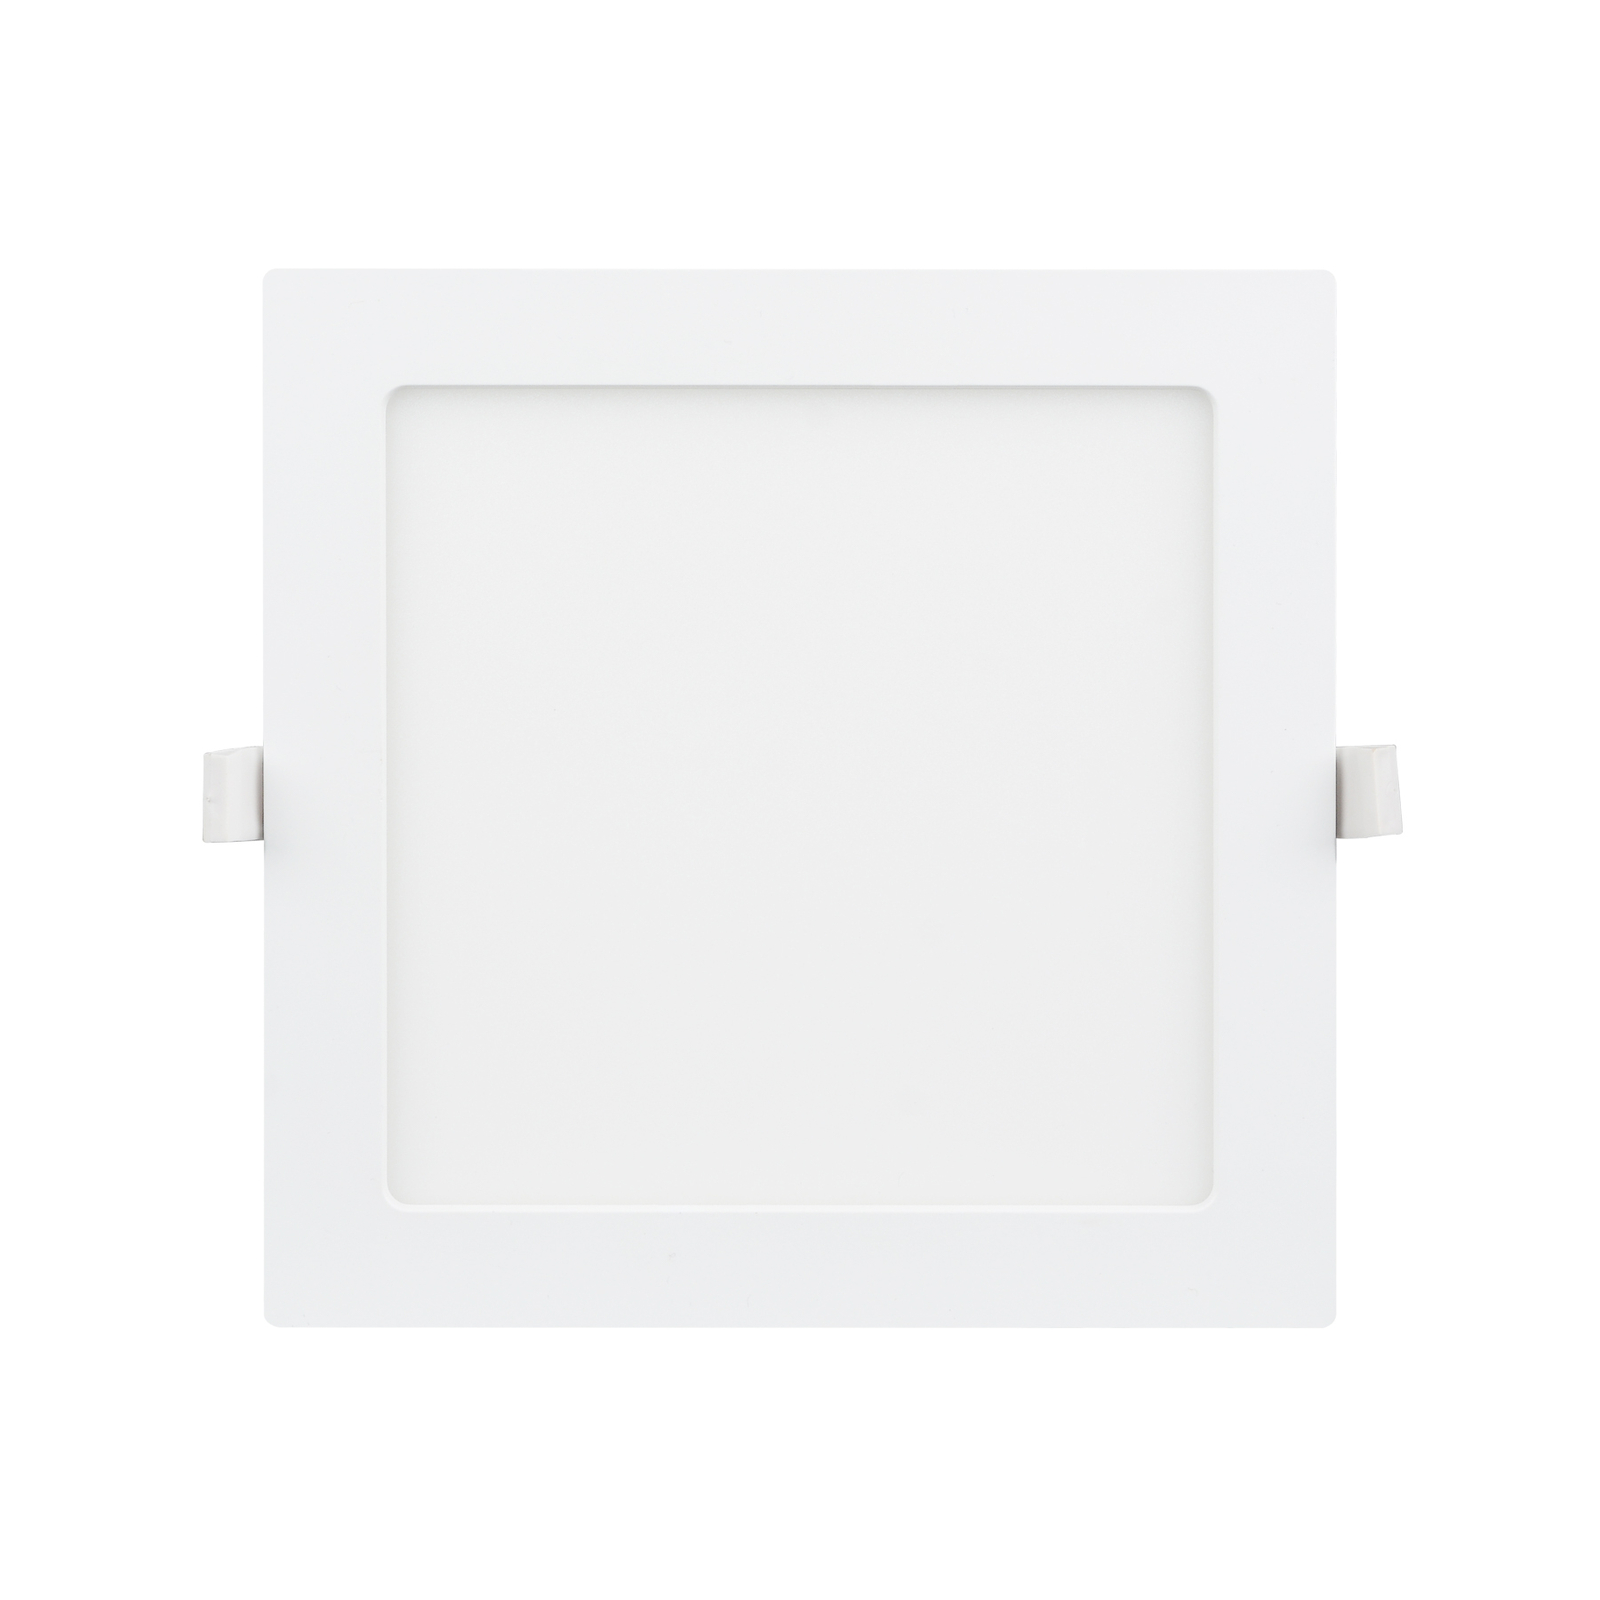 Prios Helina -LED-uppovalo, valkoinen, 22 cm, 24 W